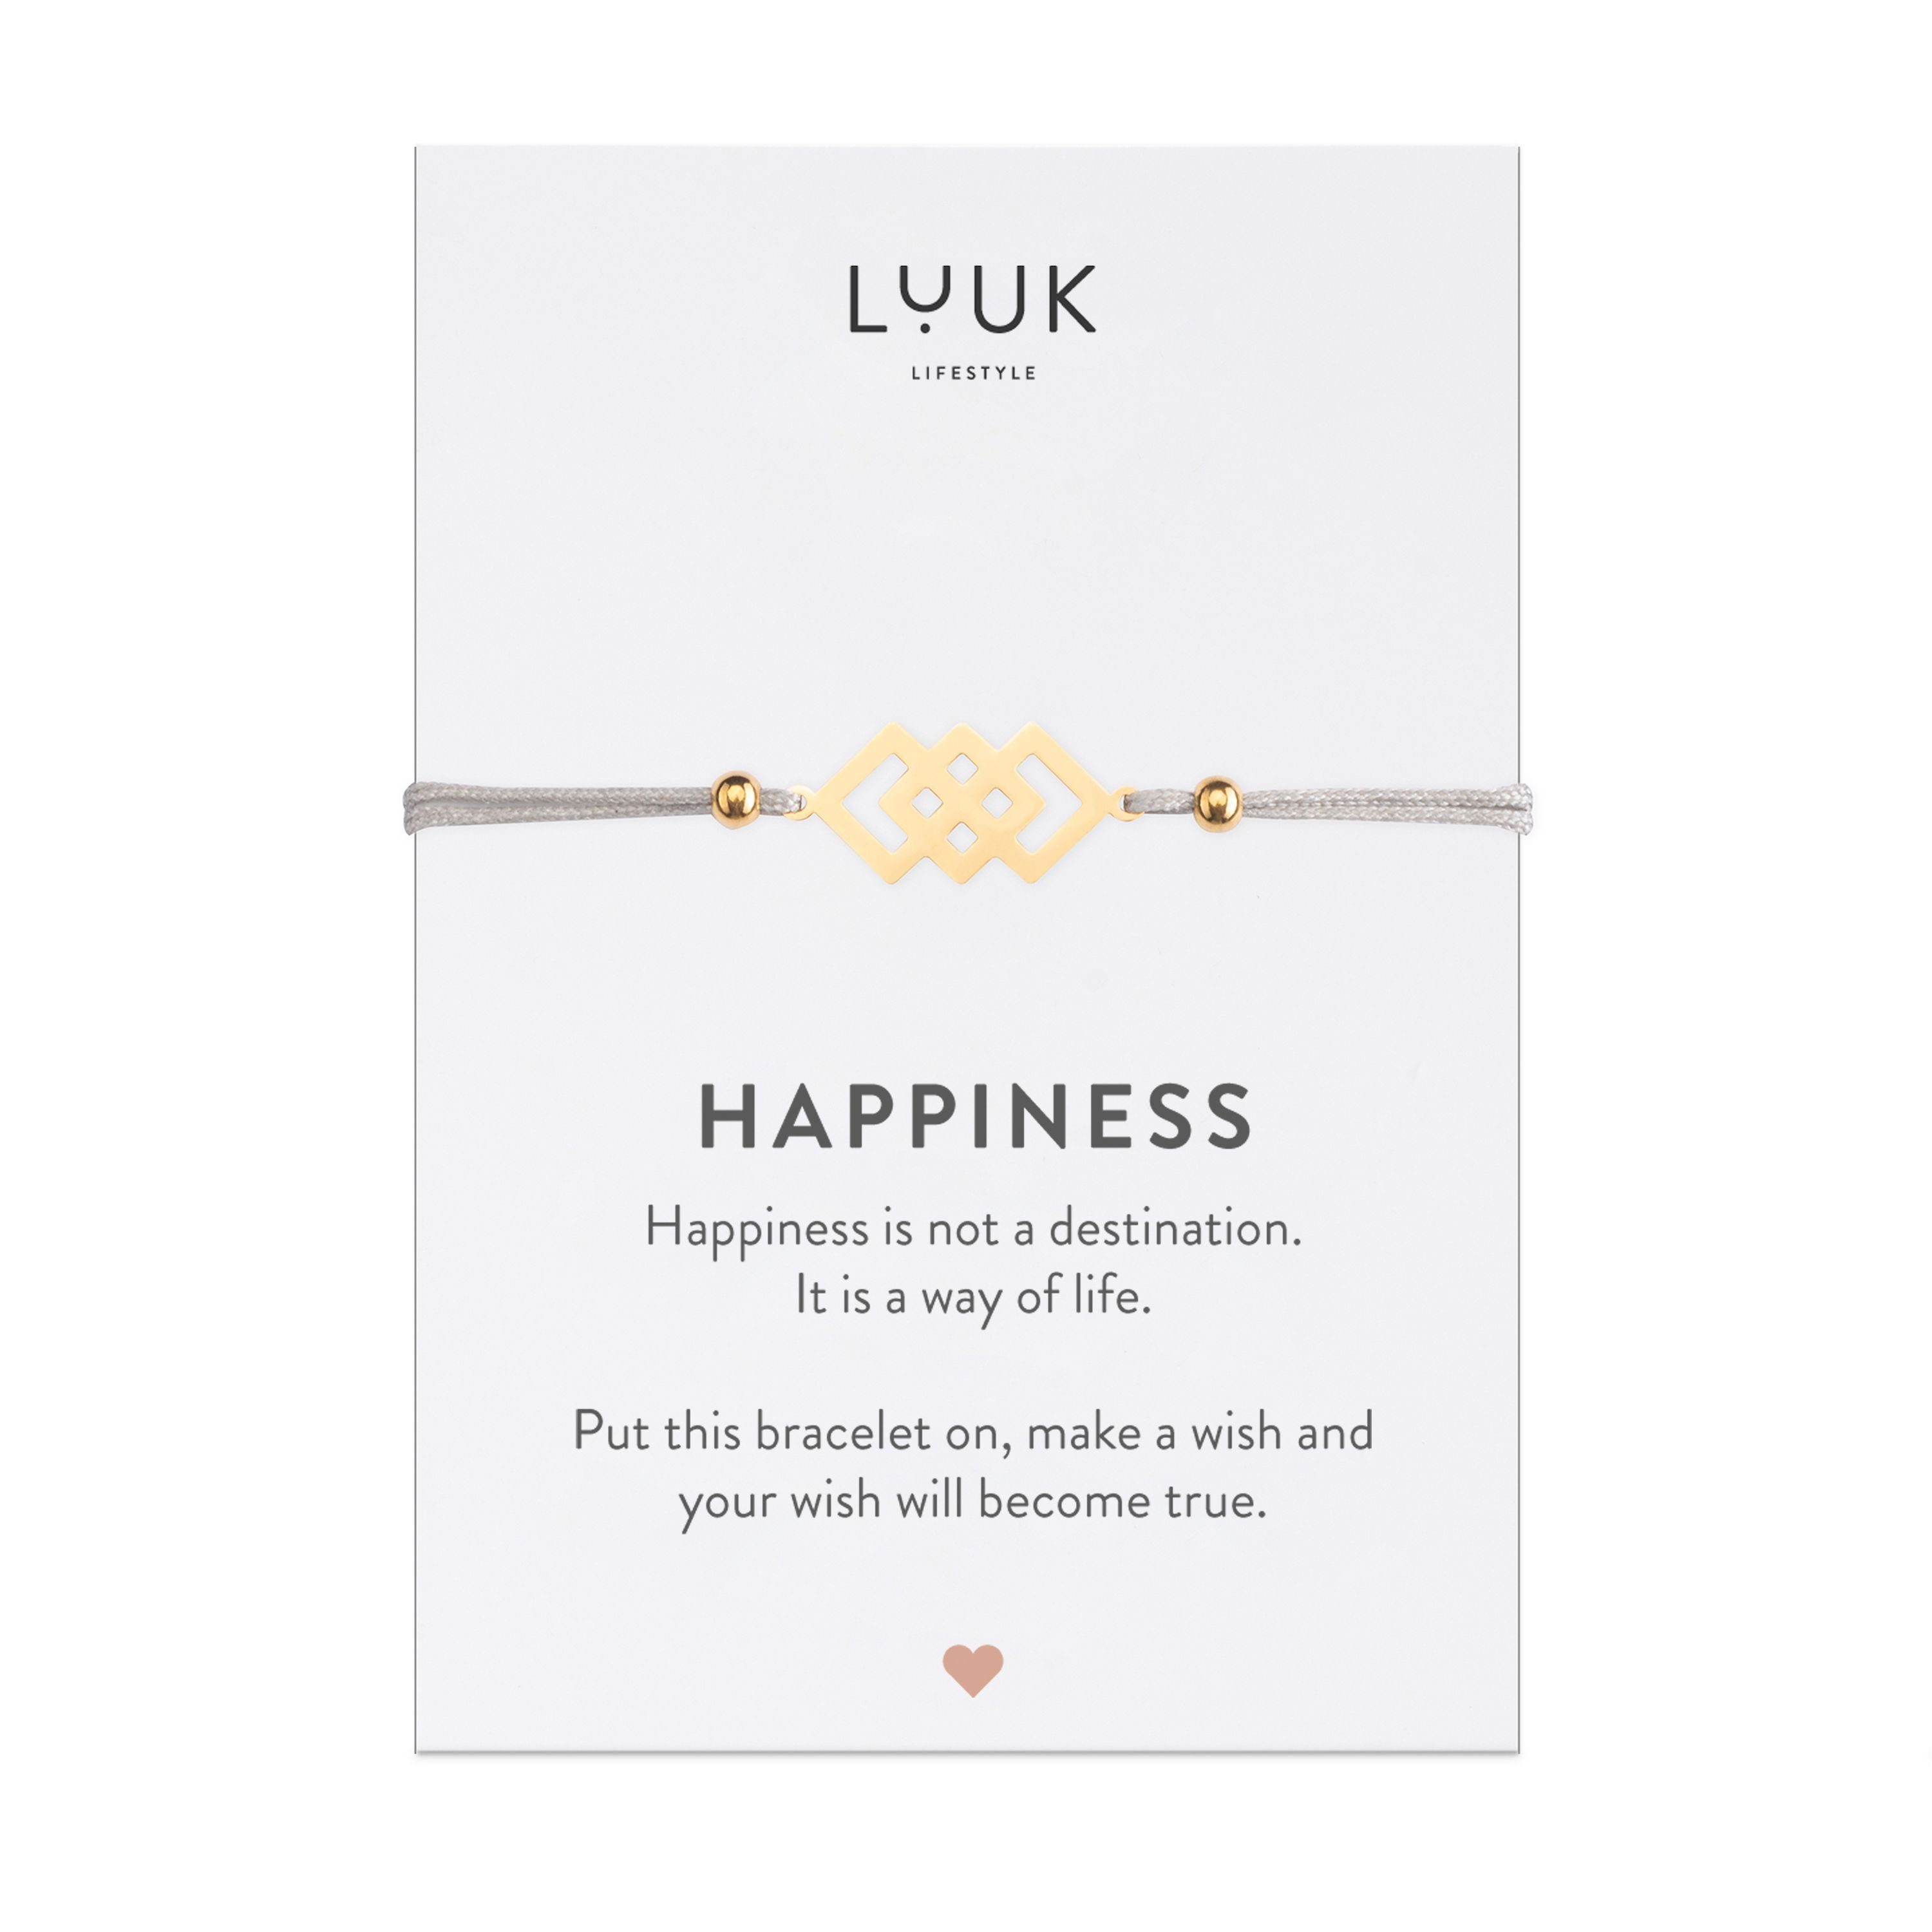 LUUK LIFESTYLE Gold Freundschaftsarmband Happiness verschlungene handmade, mit Quadrate, Spruchkarte